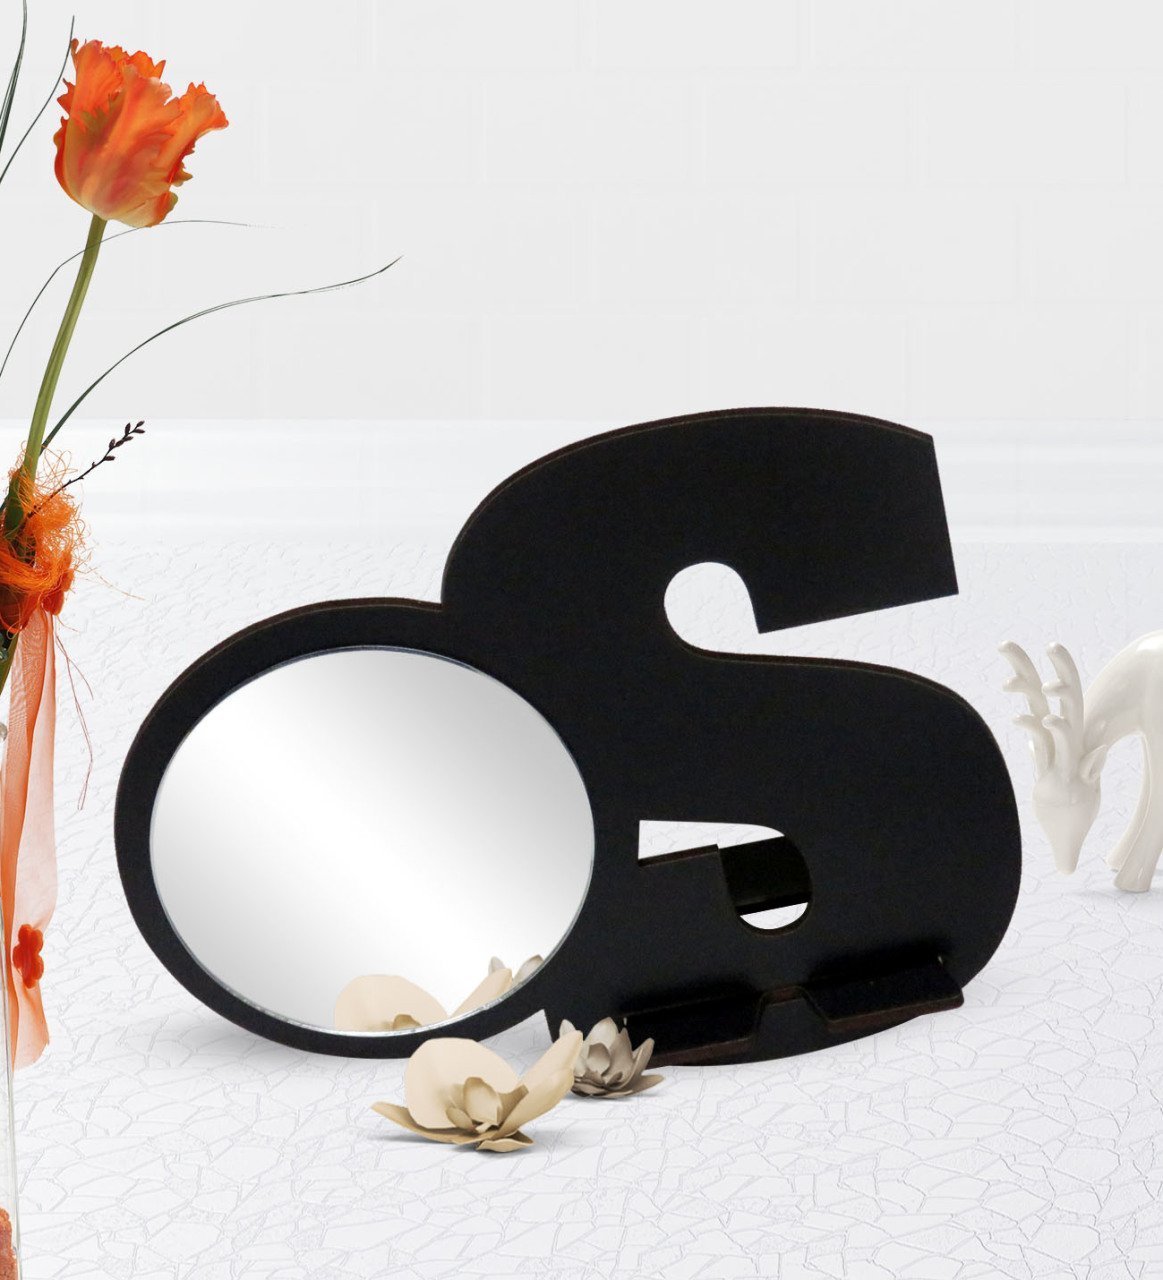 Kişiye Özel Siyah Harf Tasarımlı Ahşap Masa ve Makyaj Aynası